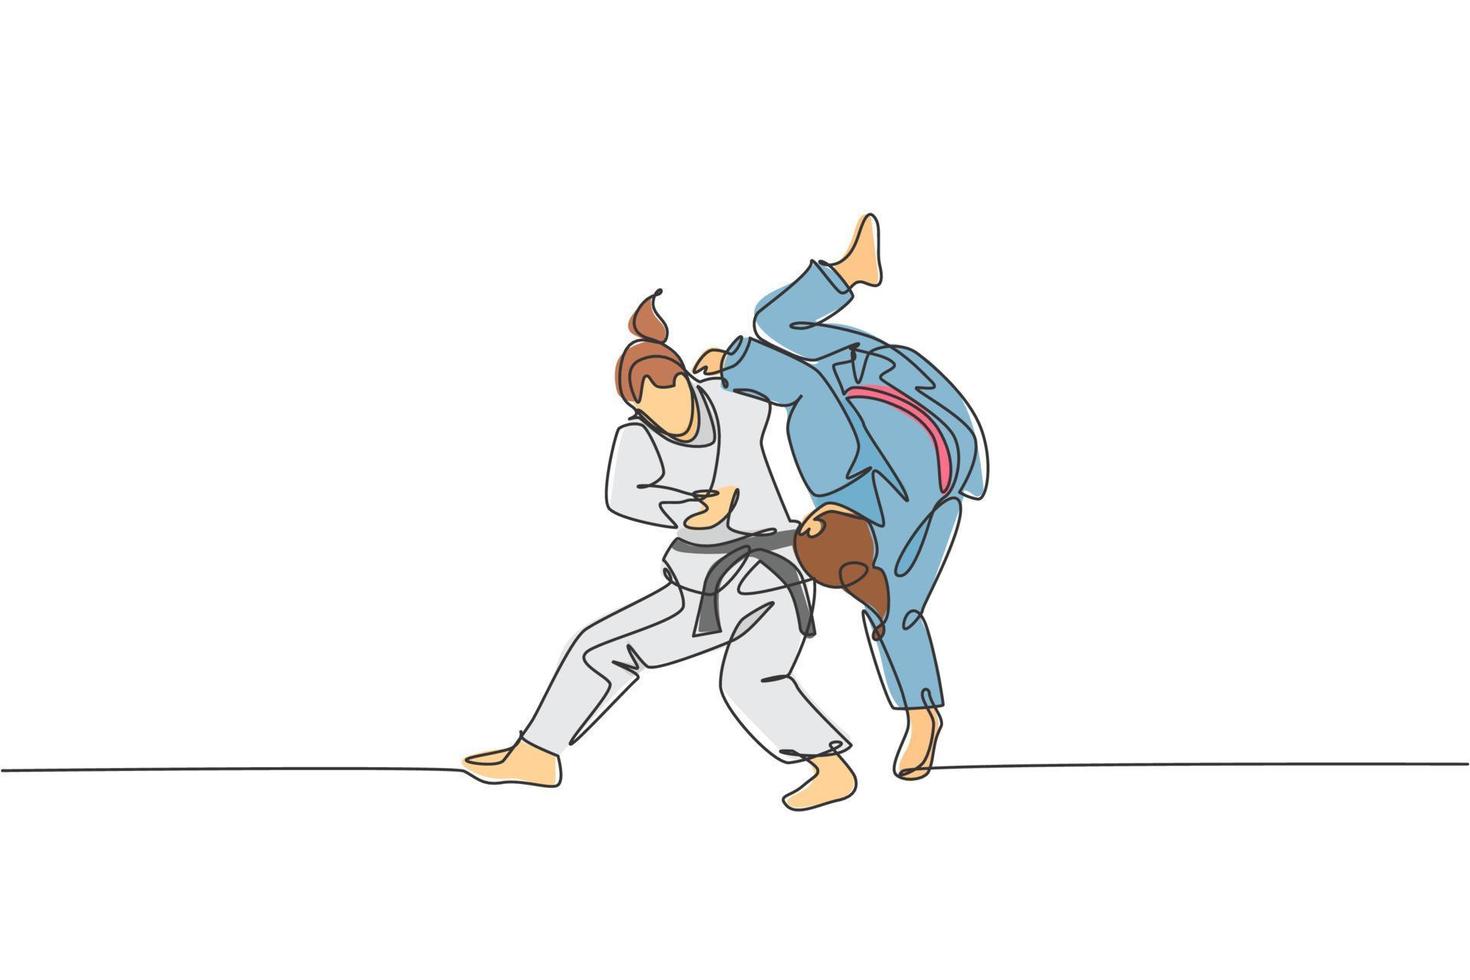 una línea continua dibujando a dos jóvenes deportistas entrenando técnica de judo en el polideportivo. concepto de competencia deportiva de lucha de batalla de jiu jitsu. Ilustración de vector gráfico de diseño de dibujo de línea única dinámica